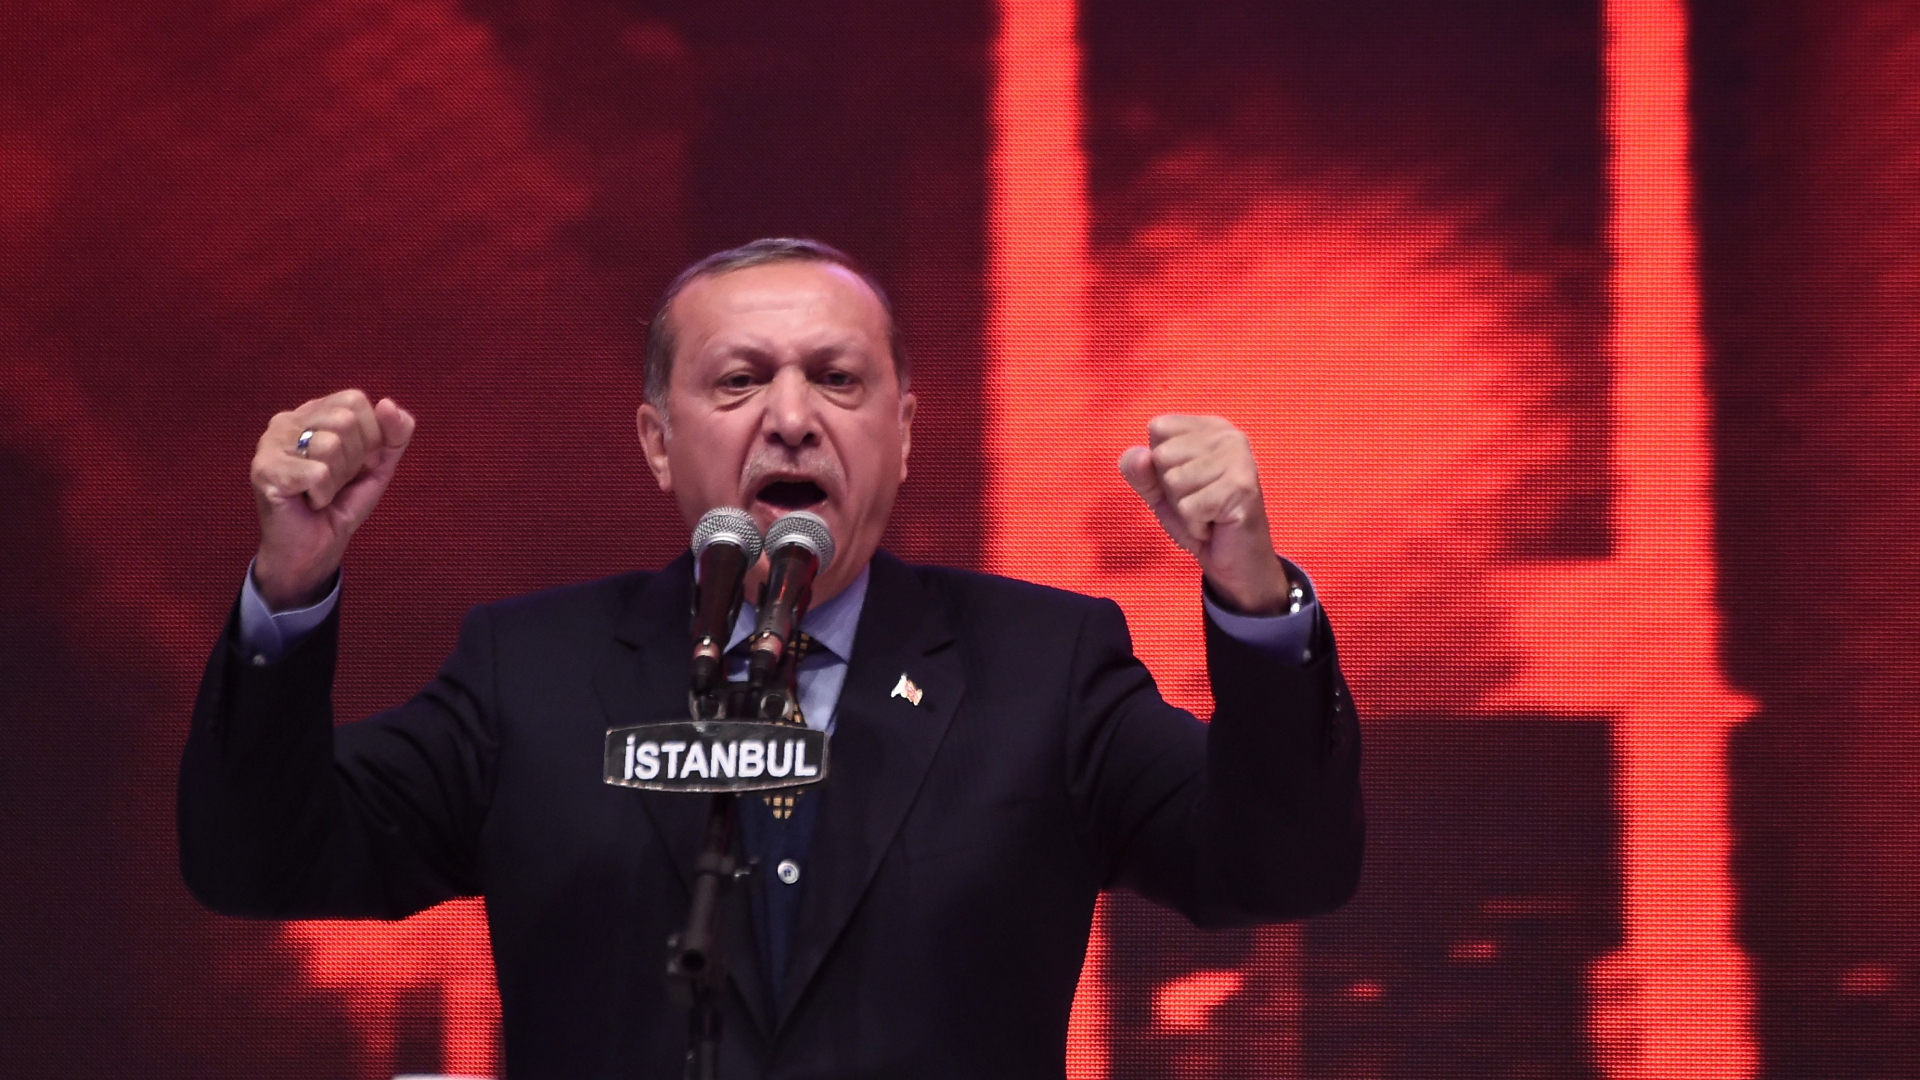 Erdogan wirbt für ein "Ja" beim Verfassungsreferendum